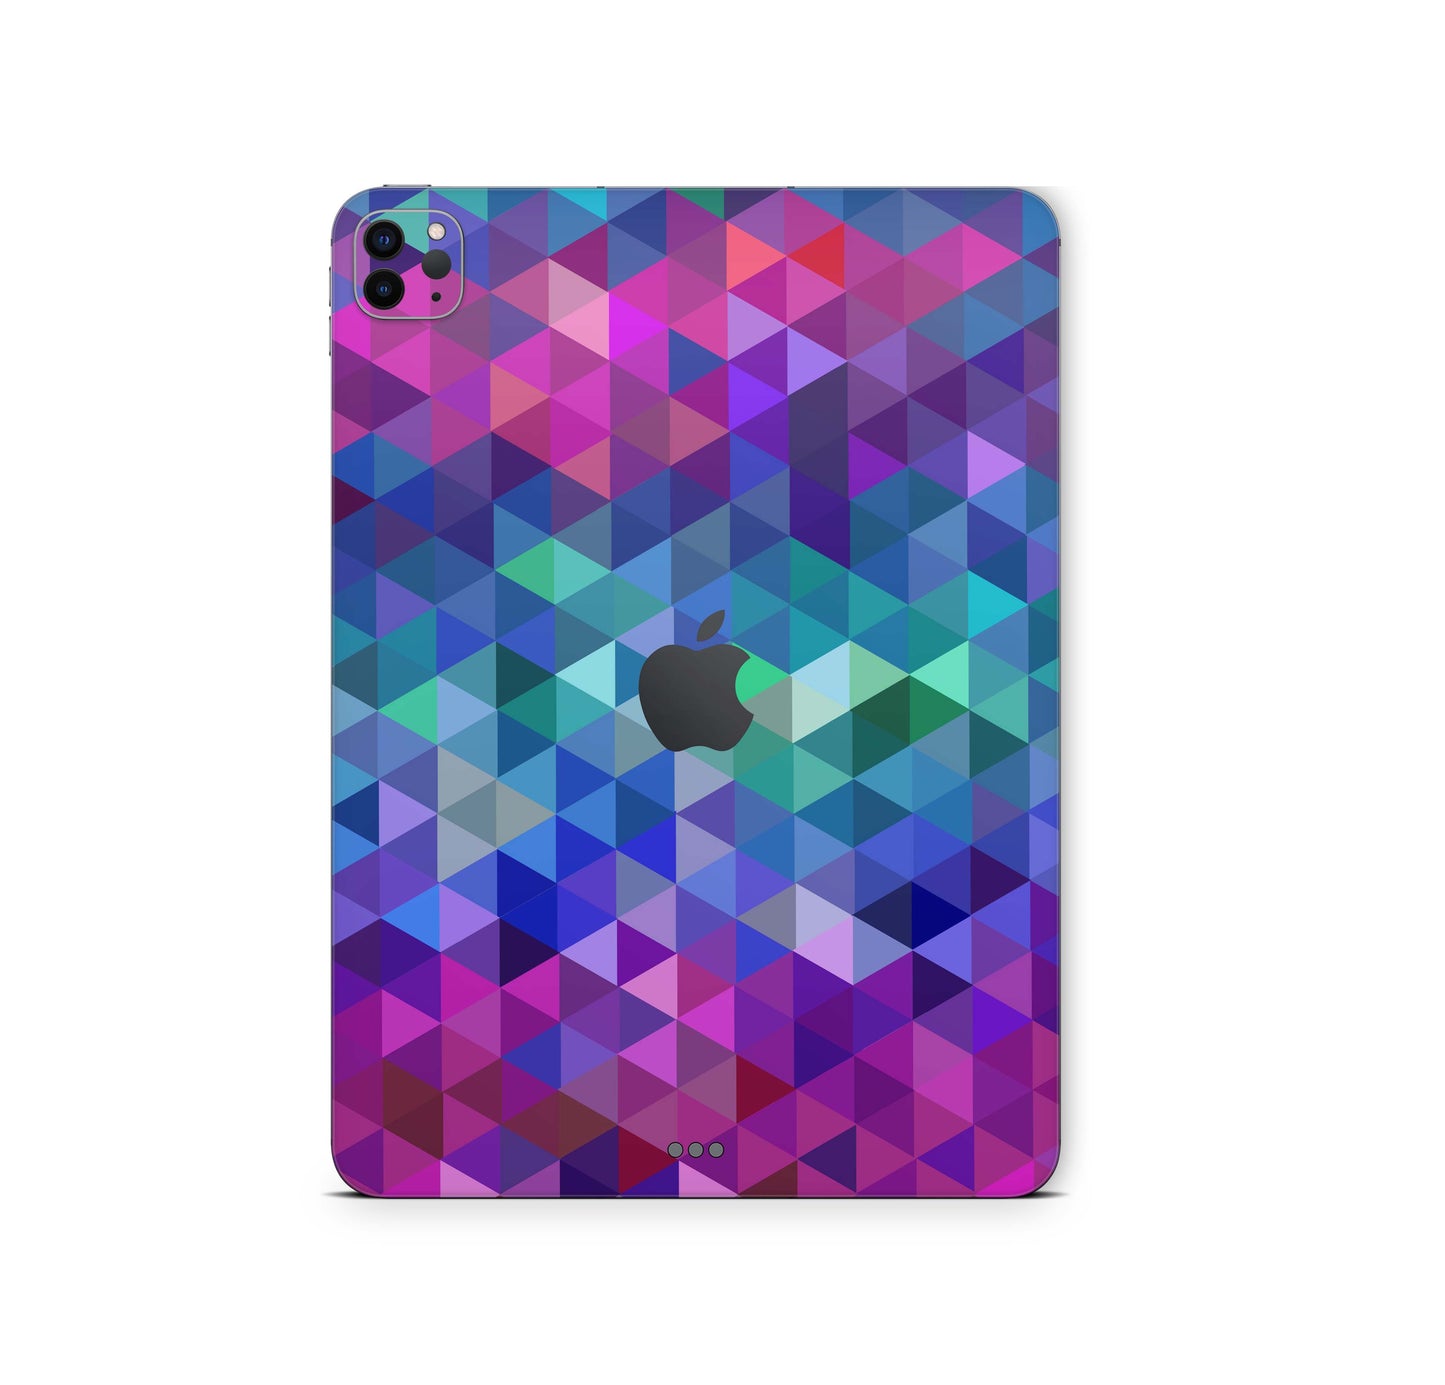 iPad Pro Skin 11" 3.Generation M1 2021 Design Cover Folie Vinyl Skins & Wraps Aufkleber Skins4u Charmed  